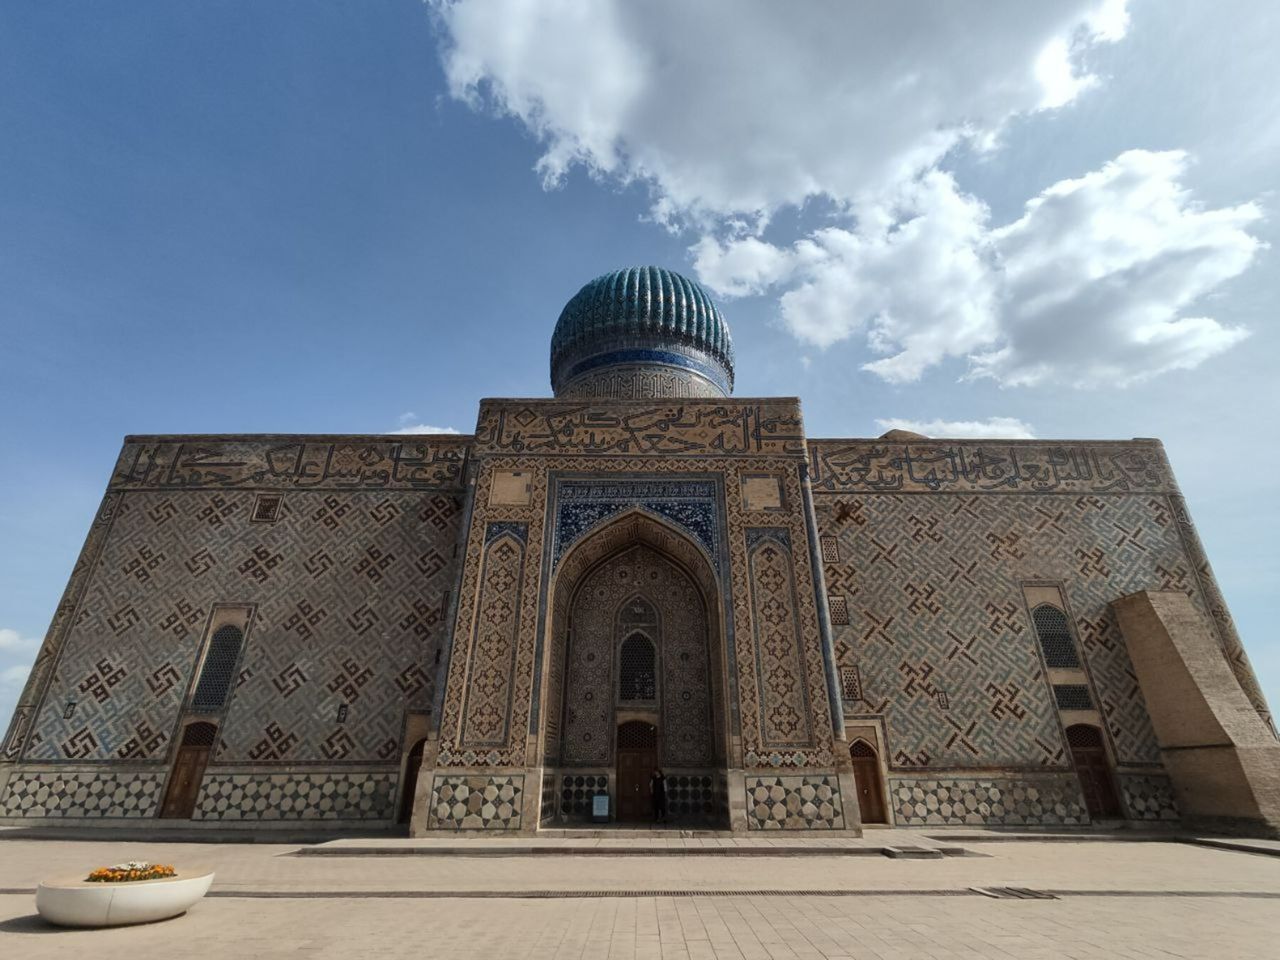 Туркестан: мавзолей Ясави и караван-сарай в группе | Цена 4200₽, отзывы, описание экскурсии